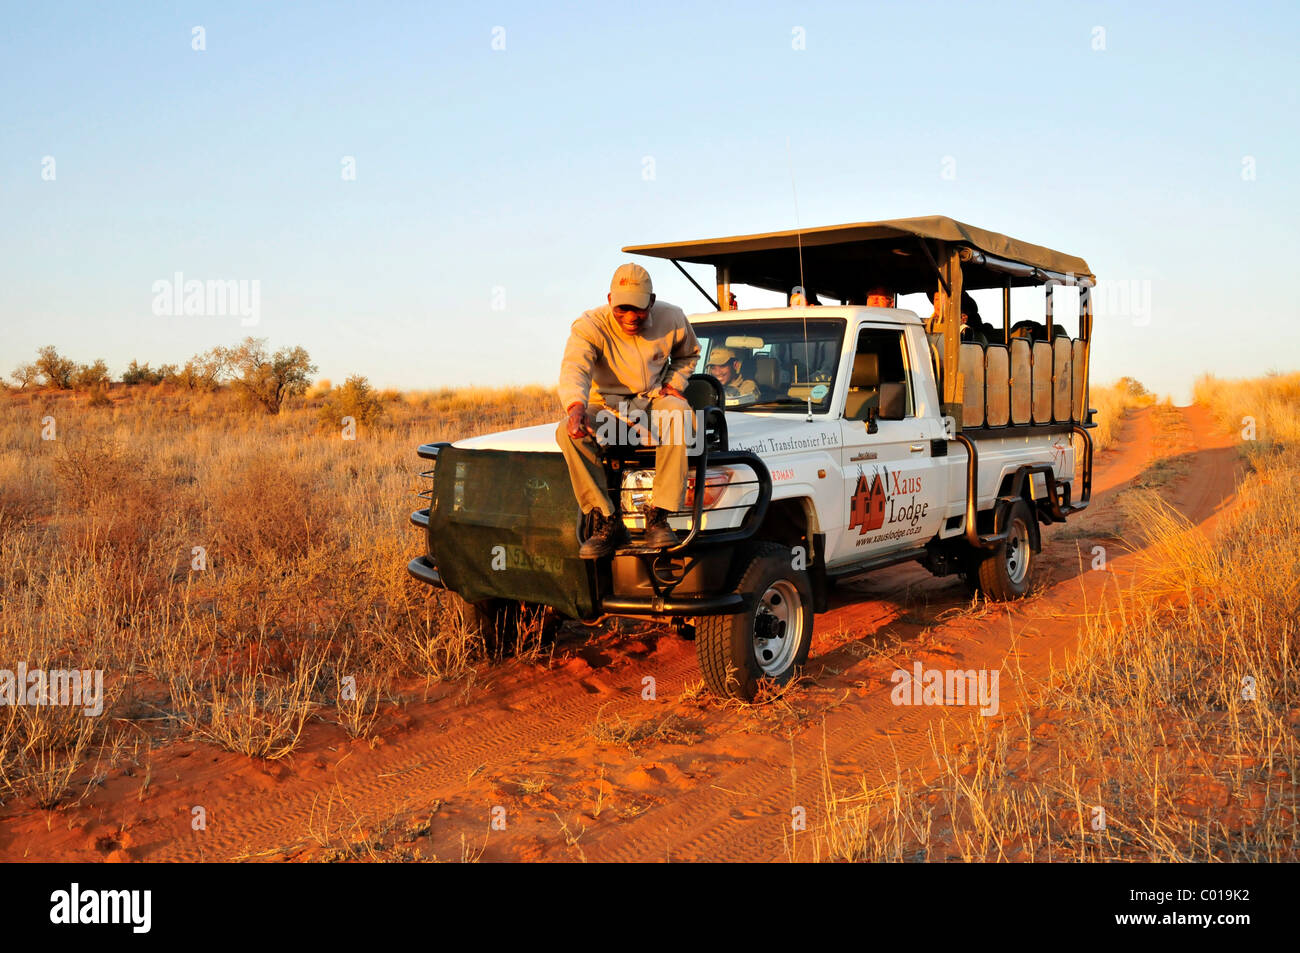 Guida della tribù dei Khomani Bushmen, Khomani San, tracking su un veicolo di safari del !Xaus Lodge Foto Stock